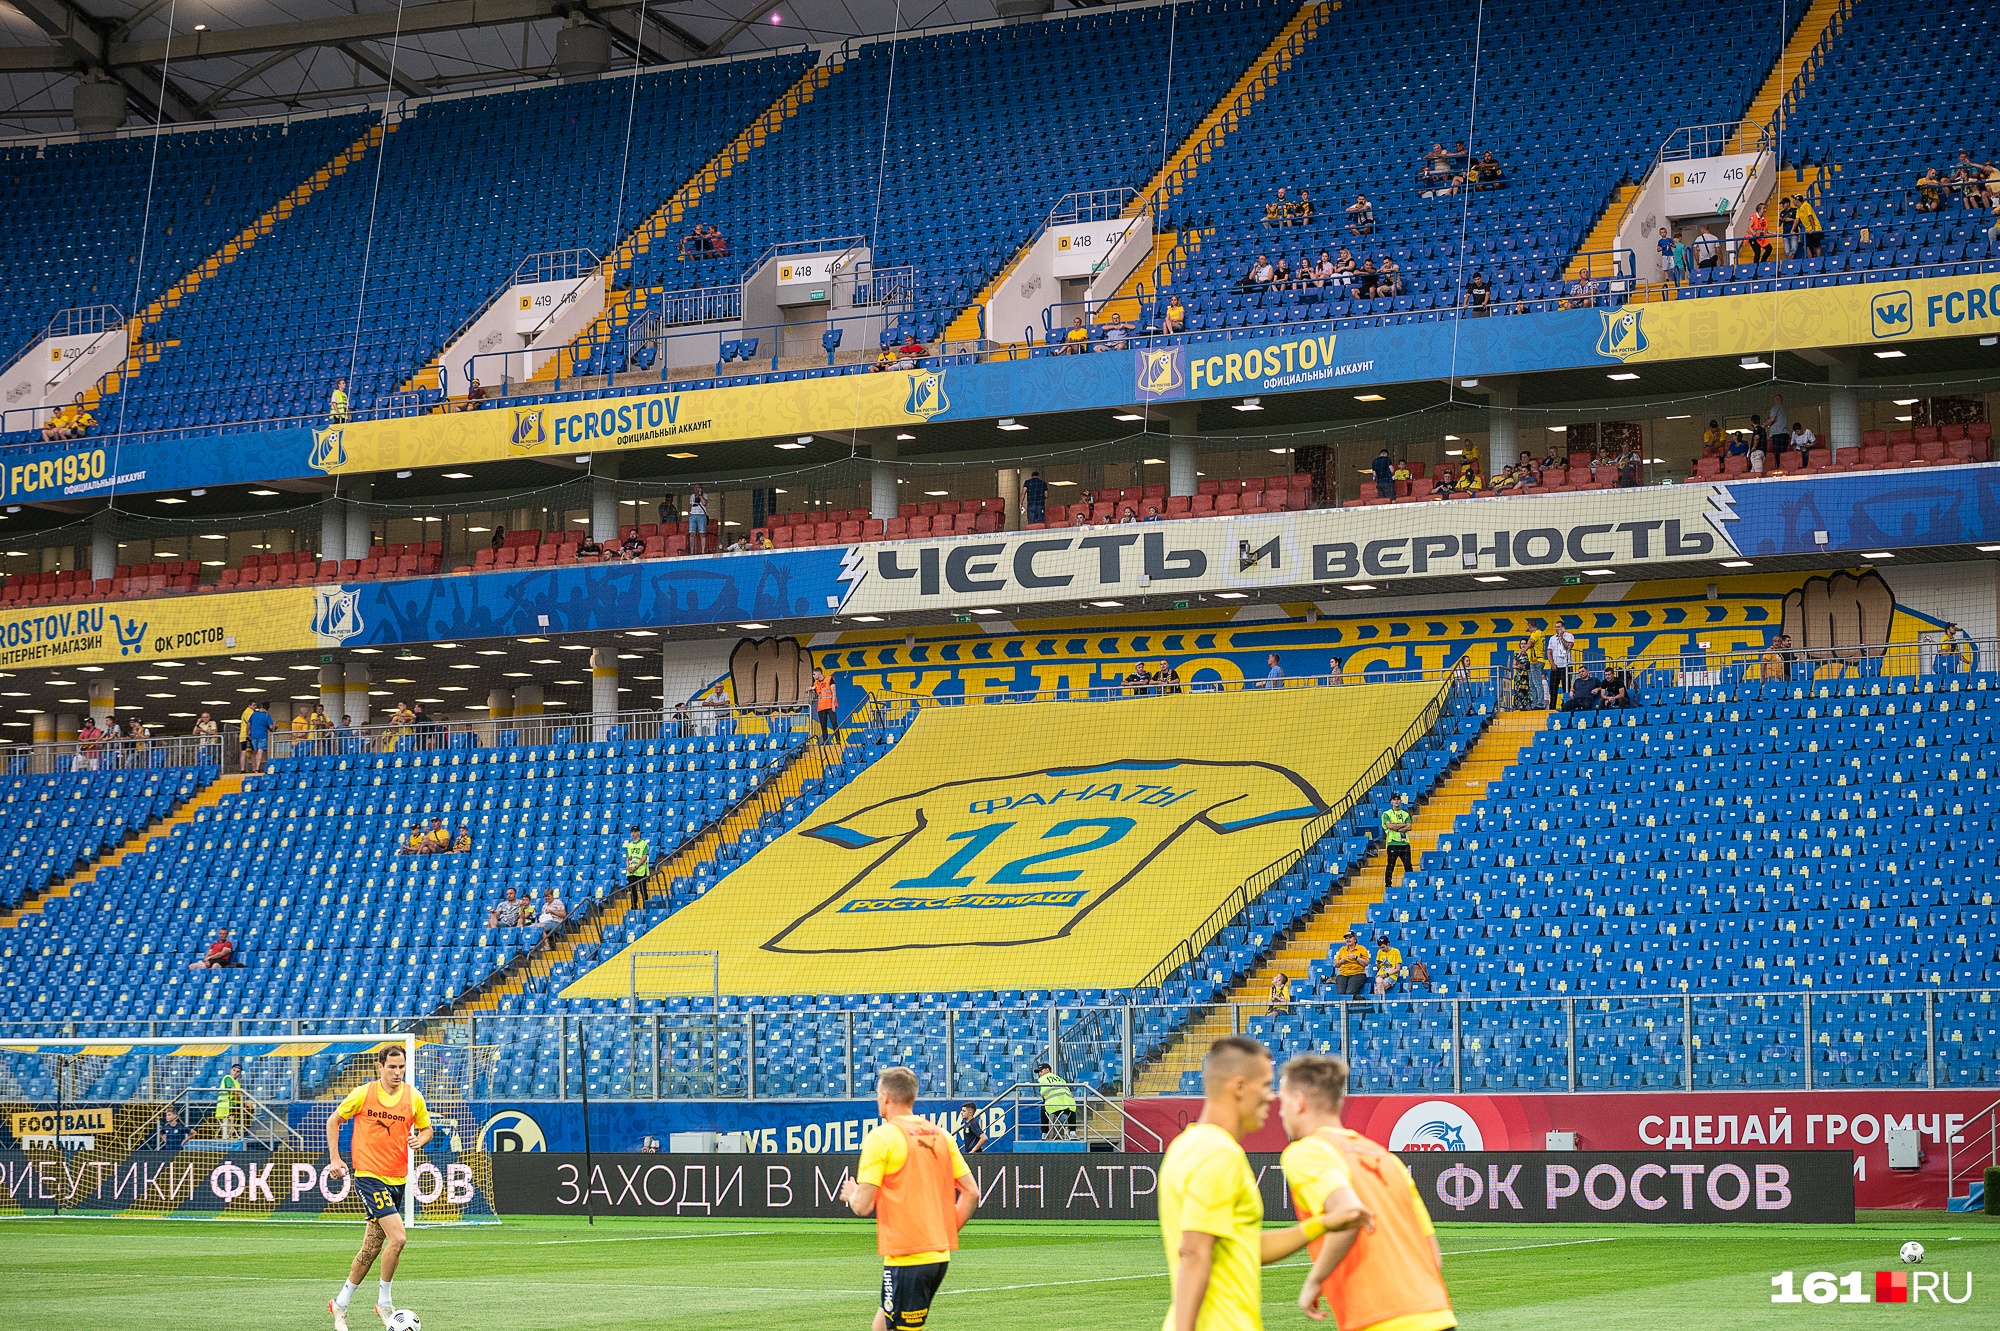 Фанатский сектор стадиона в Ростове ждет отмены Fan ID